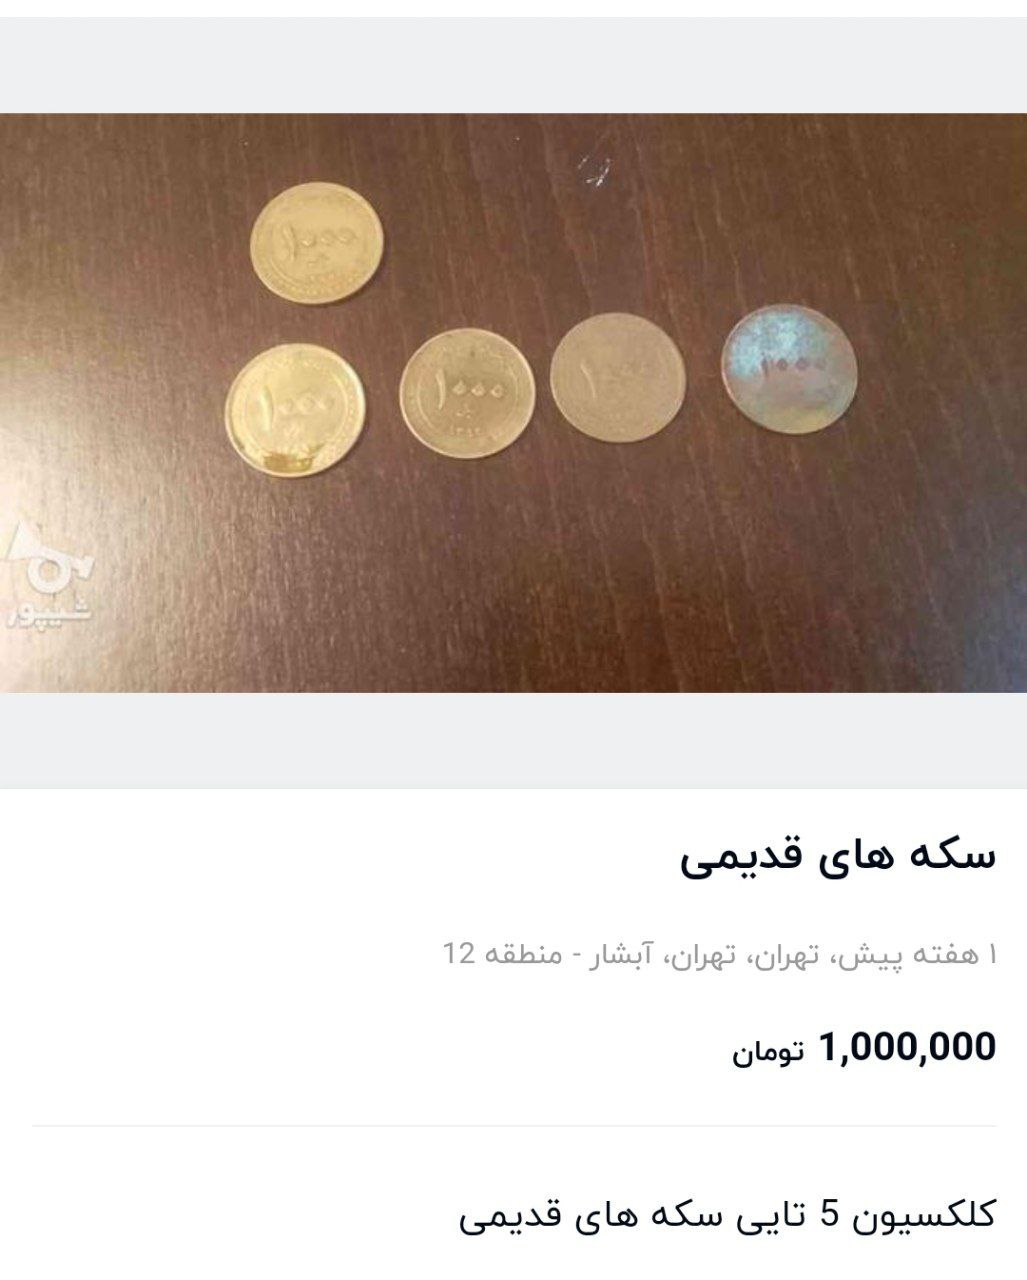 بازار عجیب خرید و فروش سکه های قدیمی؛ از ۶۰۰ هزار تومان تا ۵۰ میلیون تومان! 